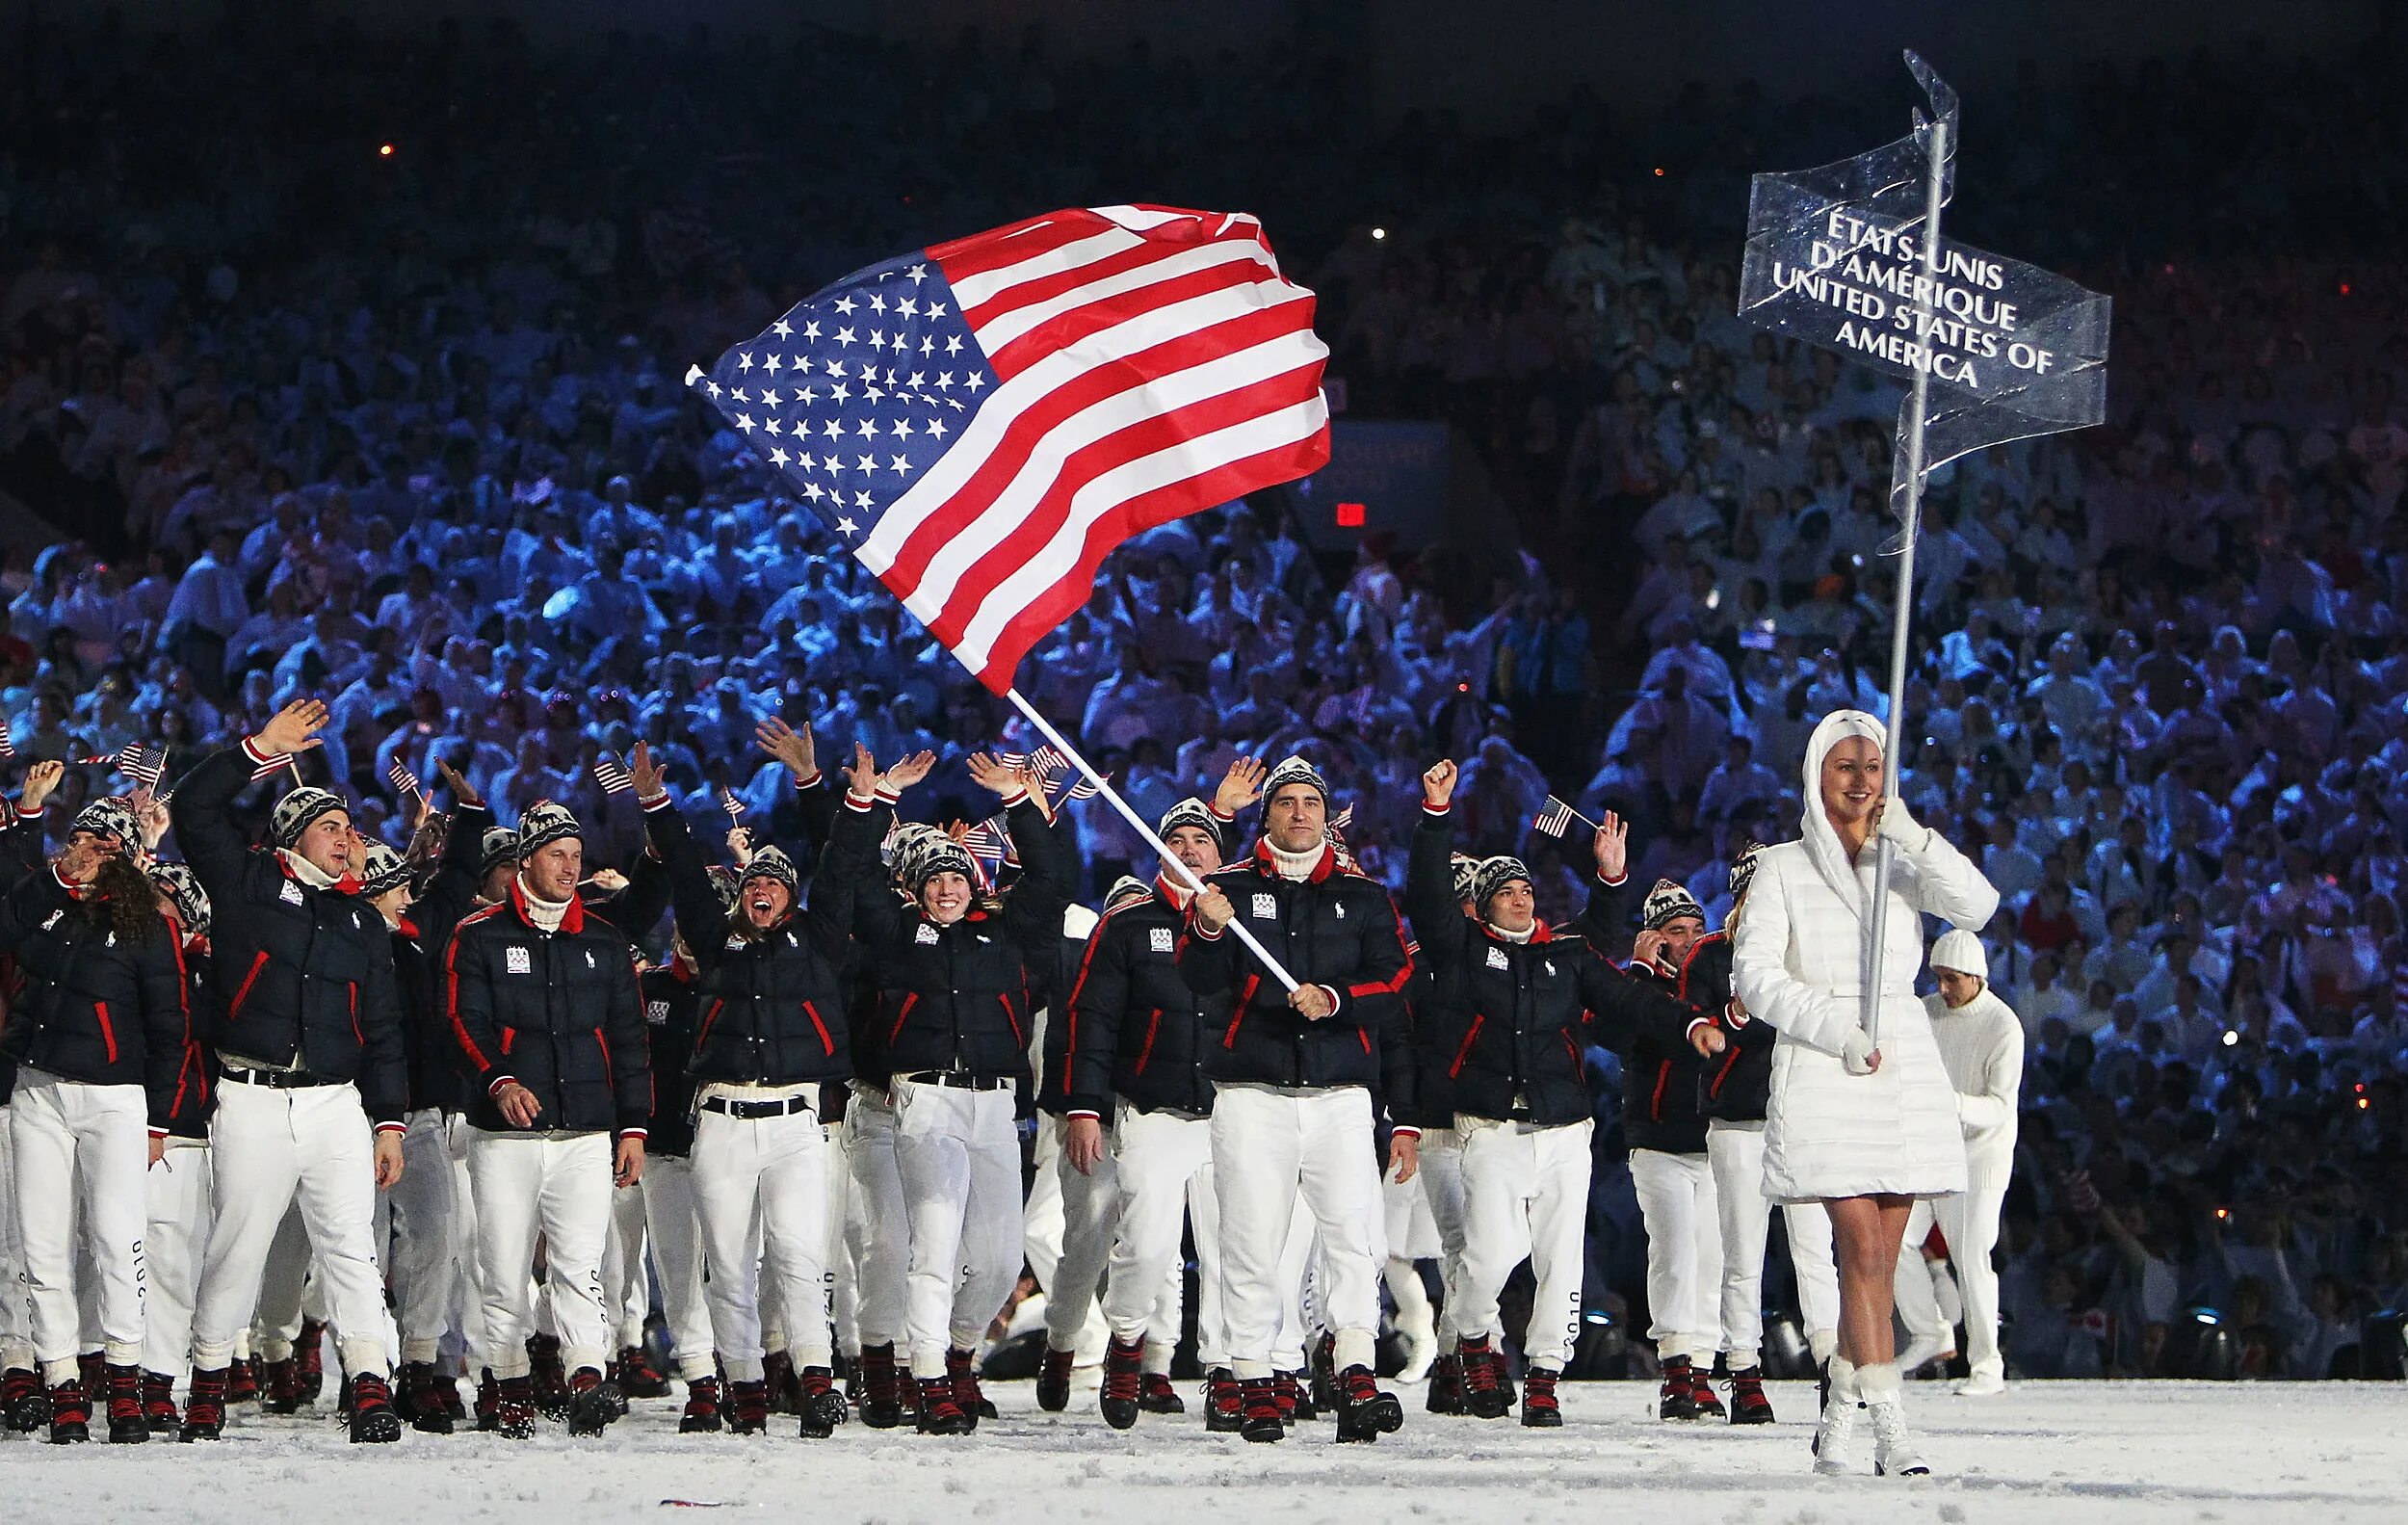 The usa games. Олимпийская сборная США 2014. Олимпийские игры в Америке. Олимпийская команда США. США на зимних играх.